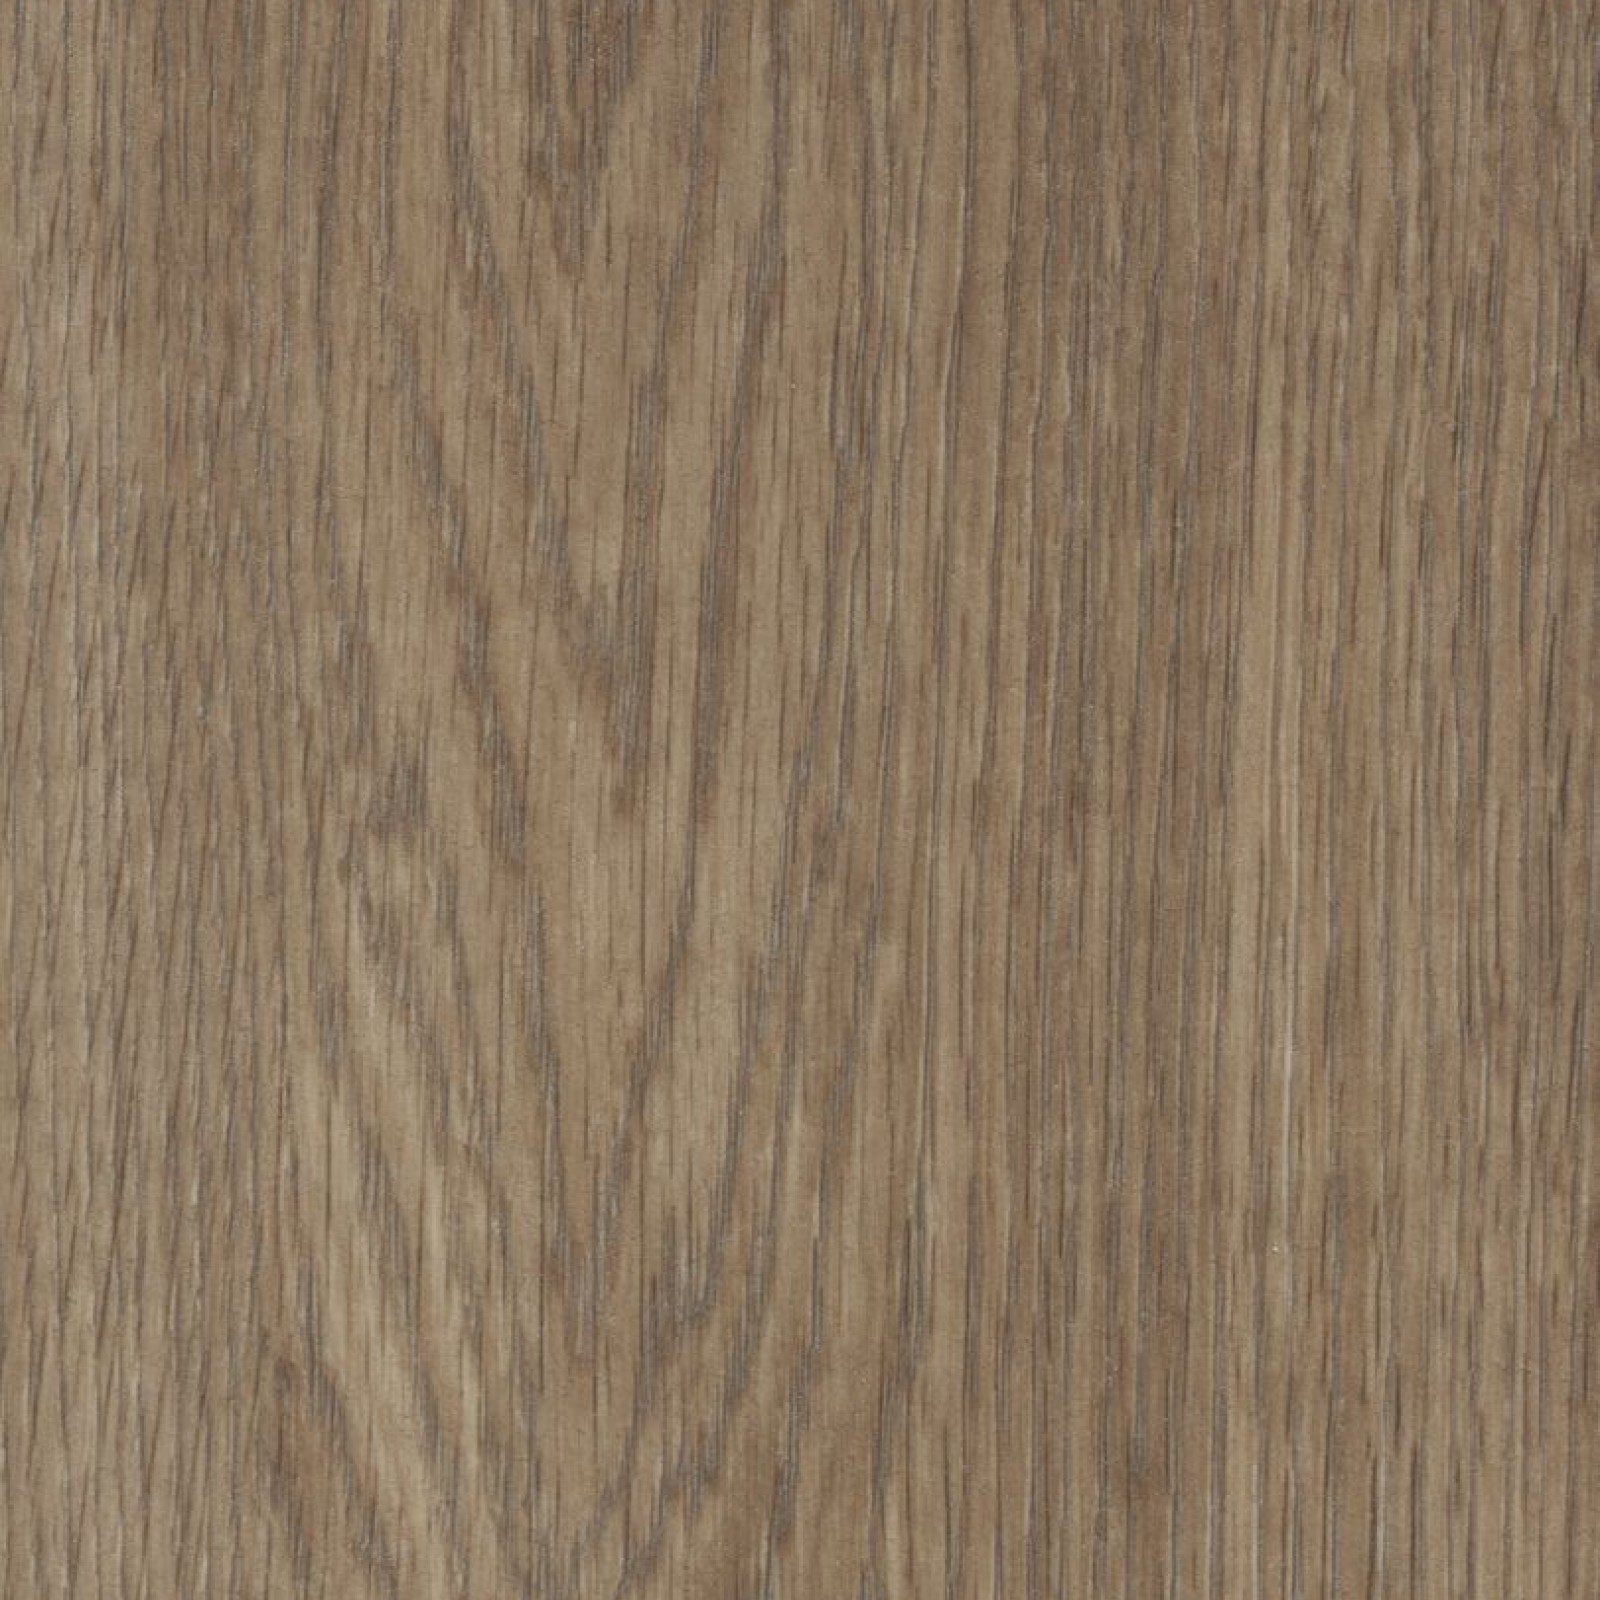 Vzor - 60374FL natural collage oak